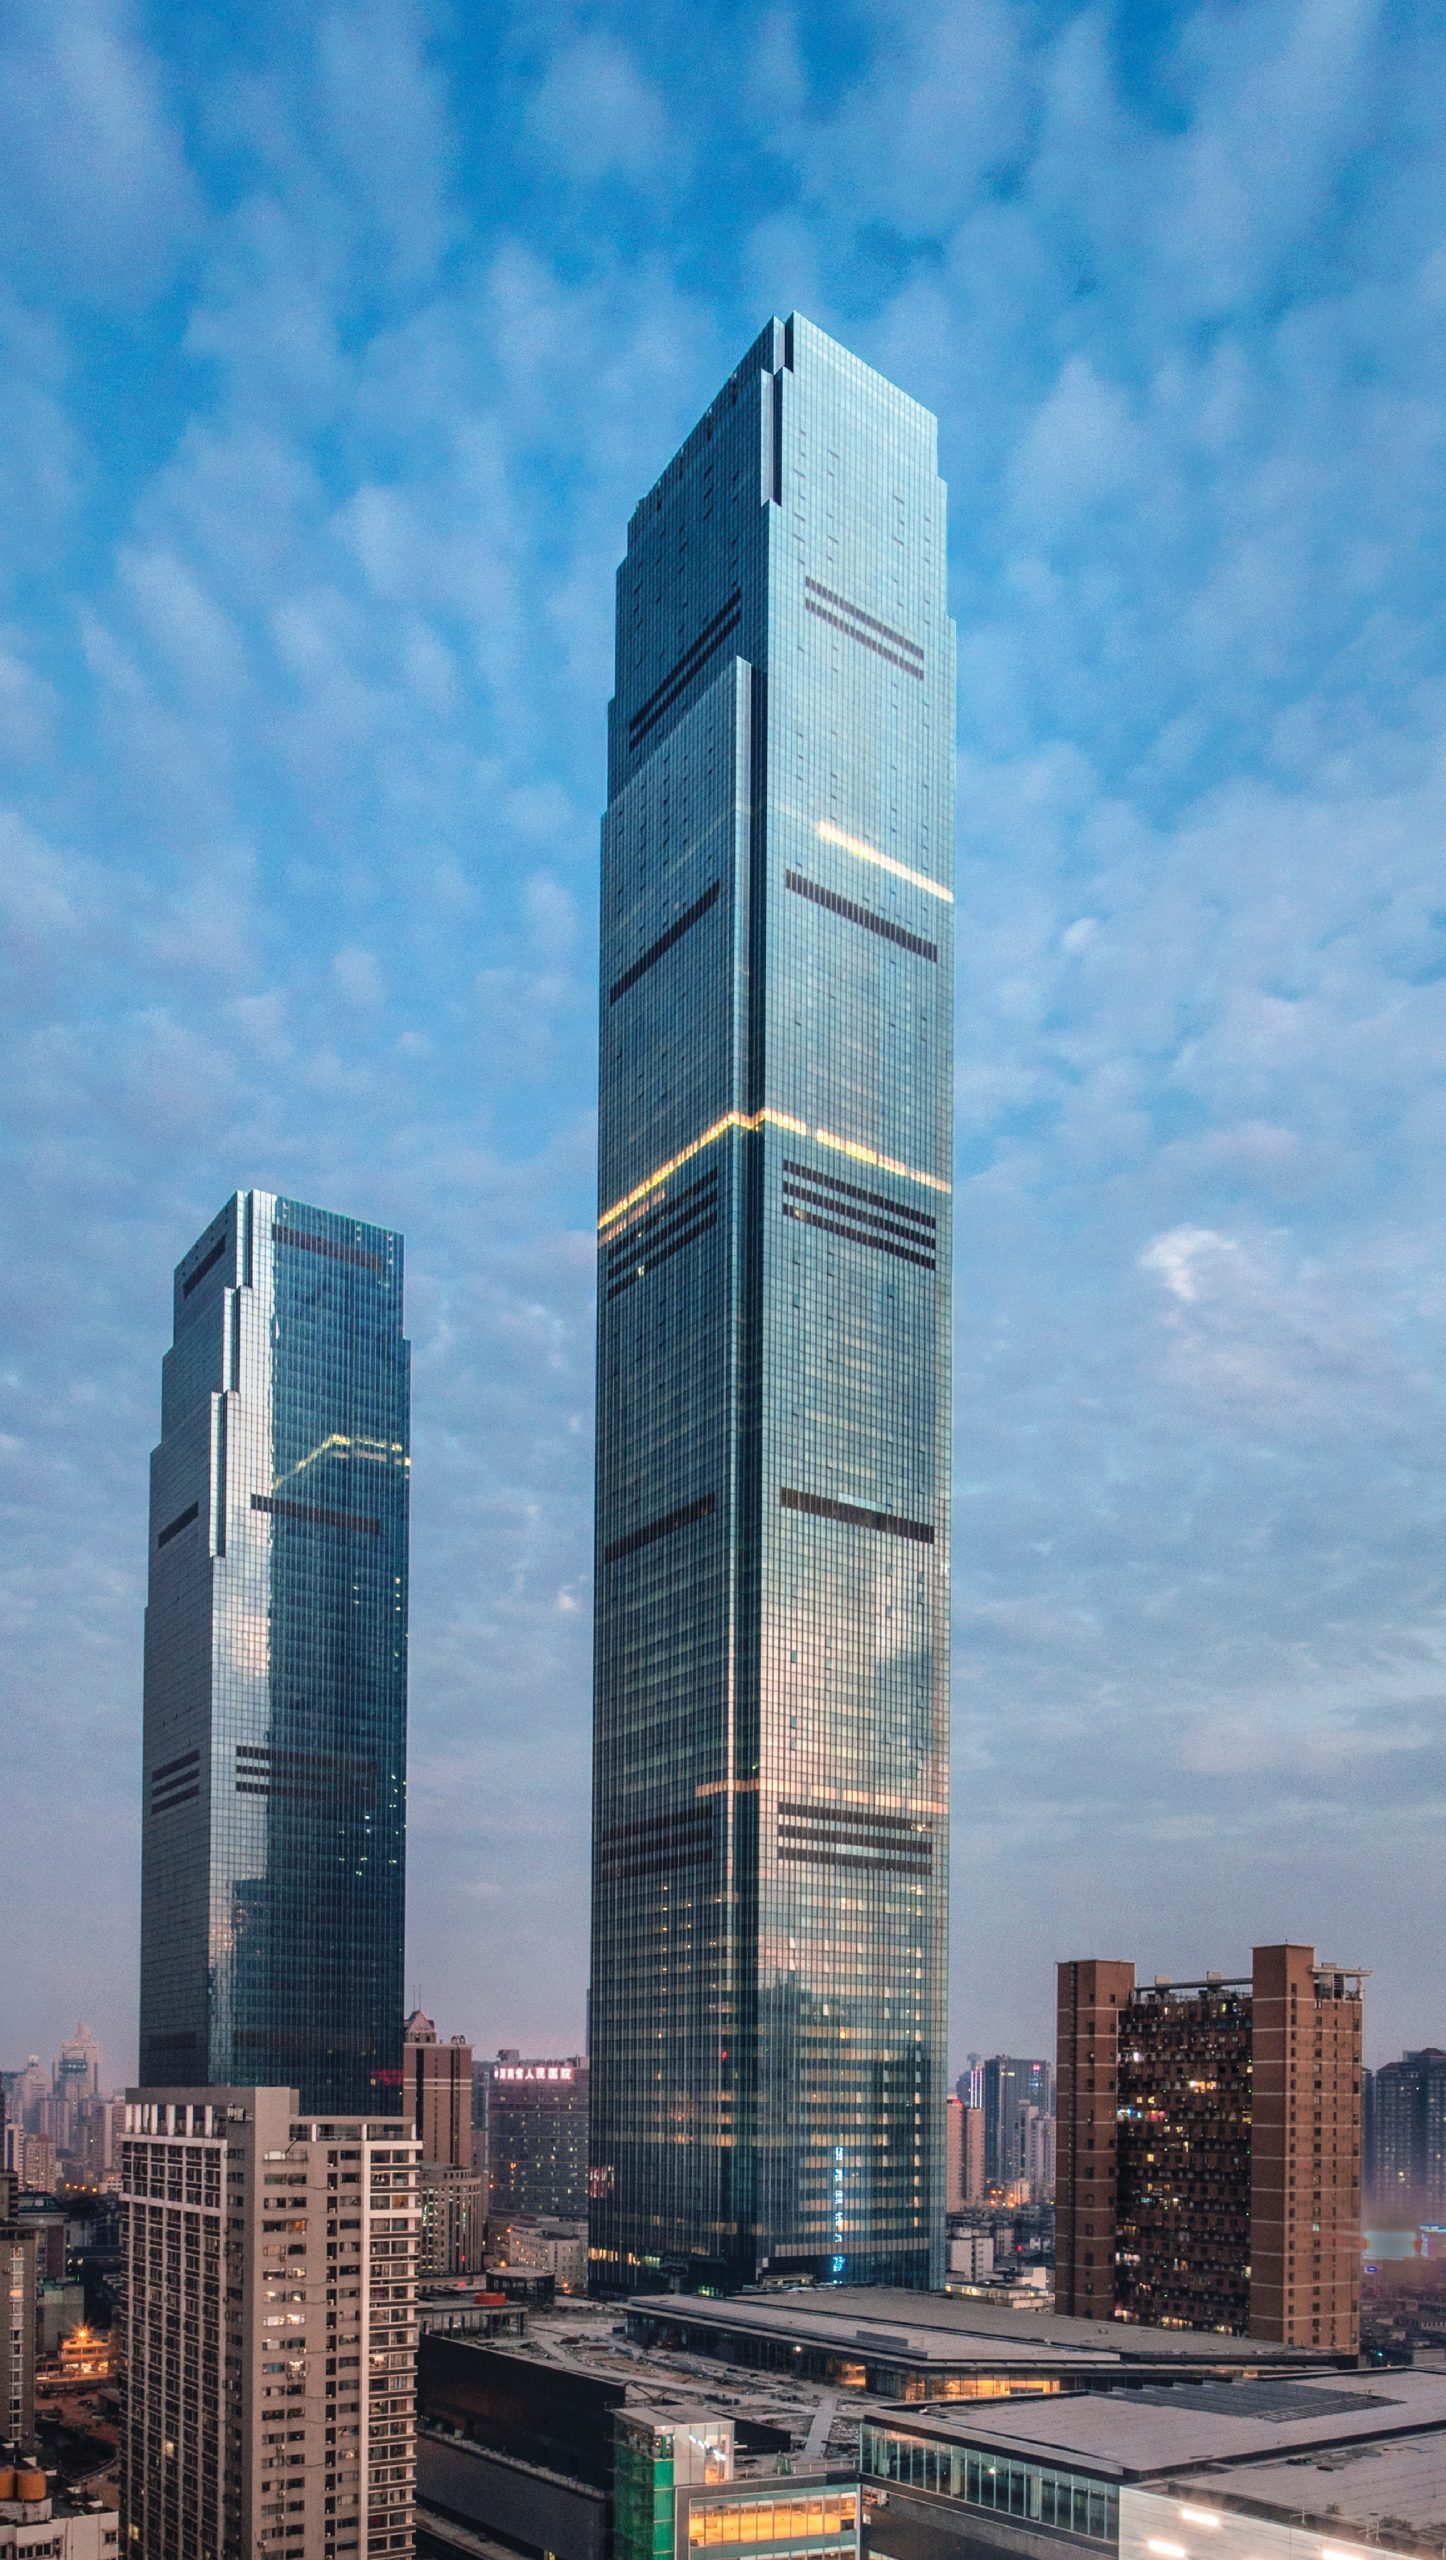 Changsha IFS Tower 1 – Supertall!